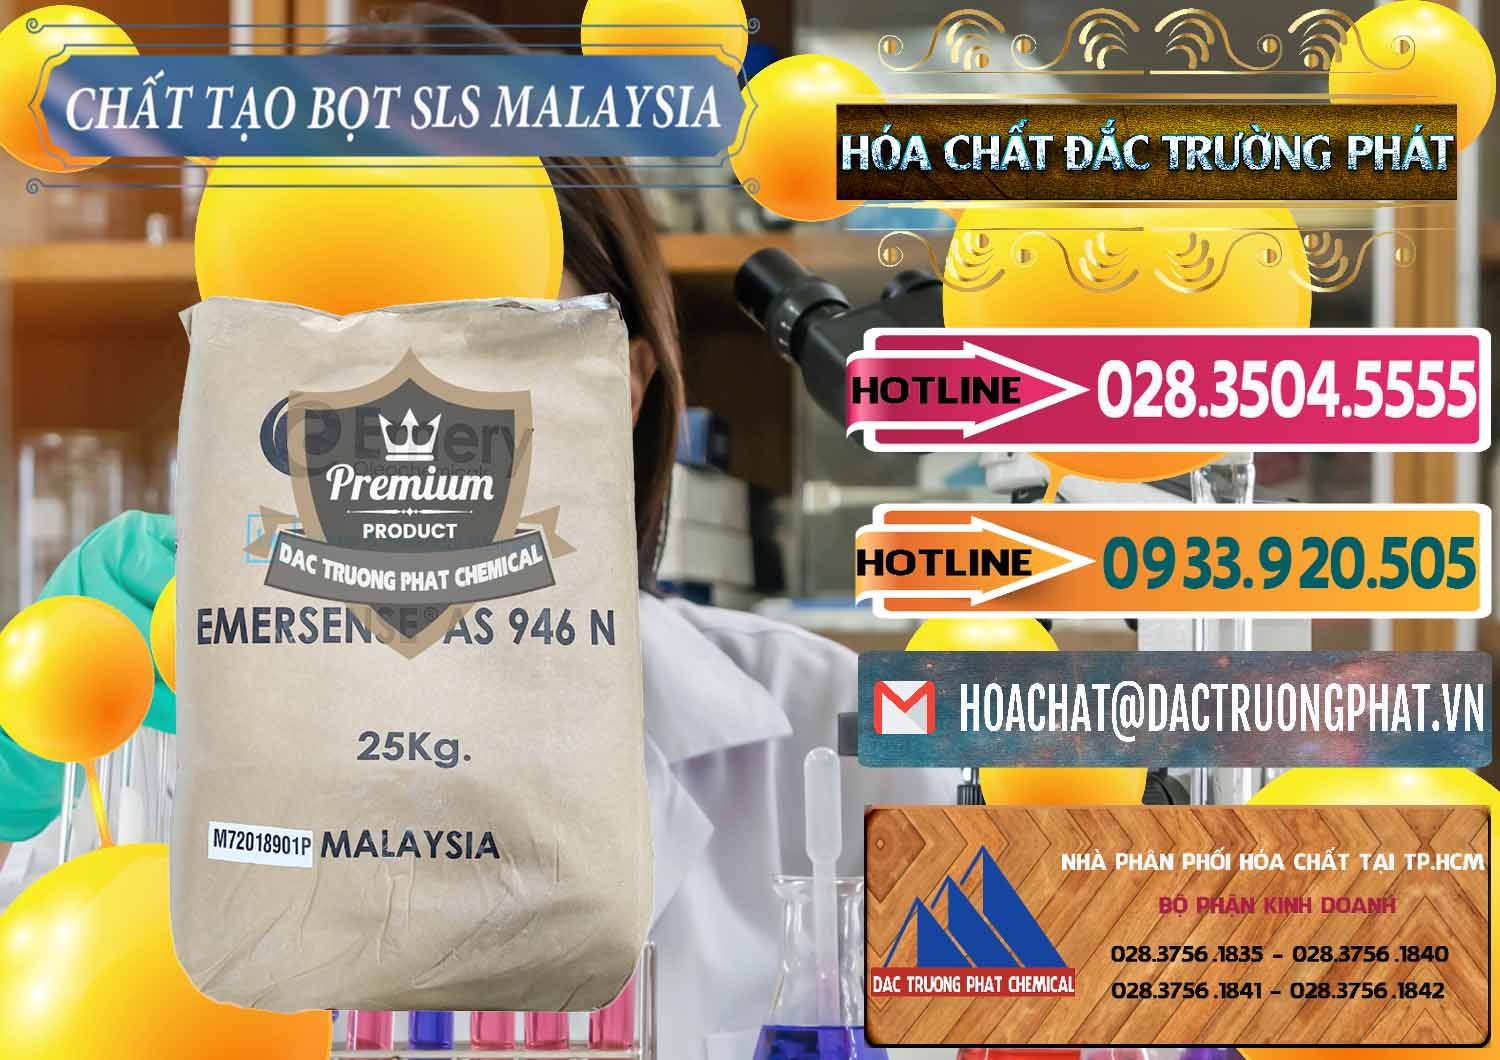 Công ty chuyên bán _ cung ứng Chất Tạo Bọt SLS Emery - Emersense AS 946N Mã Lai Malaysia - 0423 - Nơi bán và cung cấp hóa chất tại TP.HCM - dactruongphat.vn